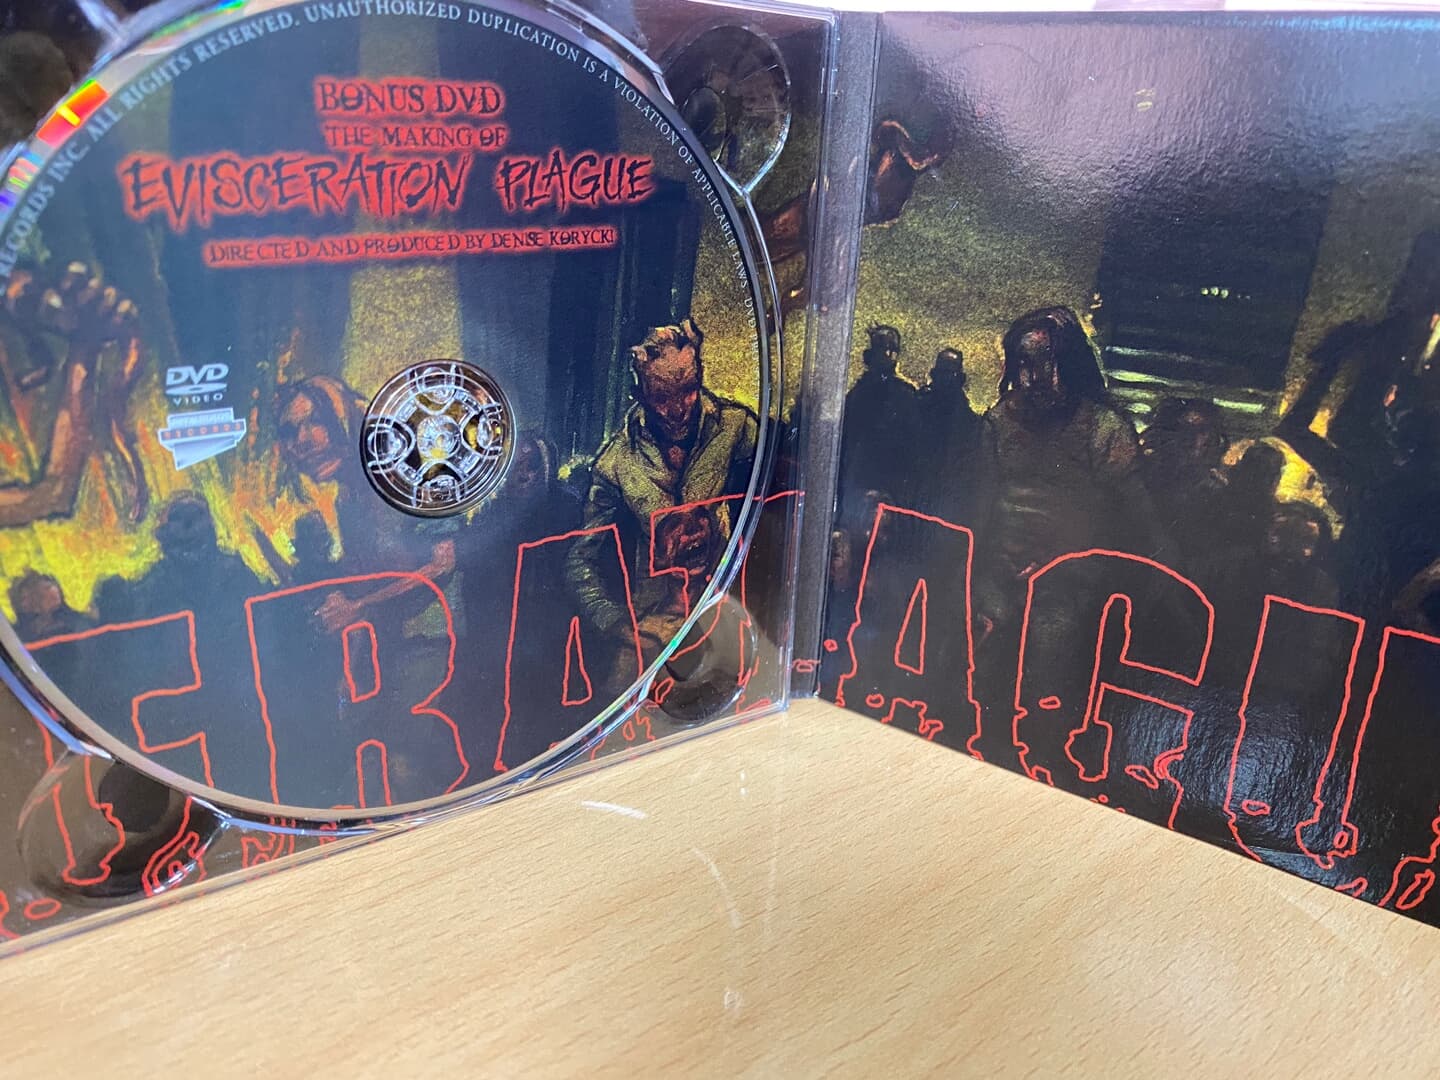 카니발 콥스 - Cannibal Corpse - Evisceration Plague 2Cds [1CD+1DVD] [디지팩] [U.S발매]